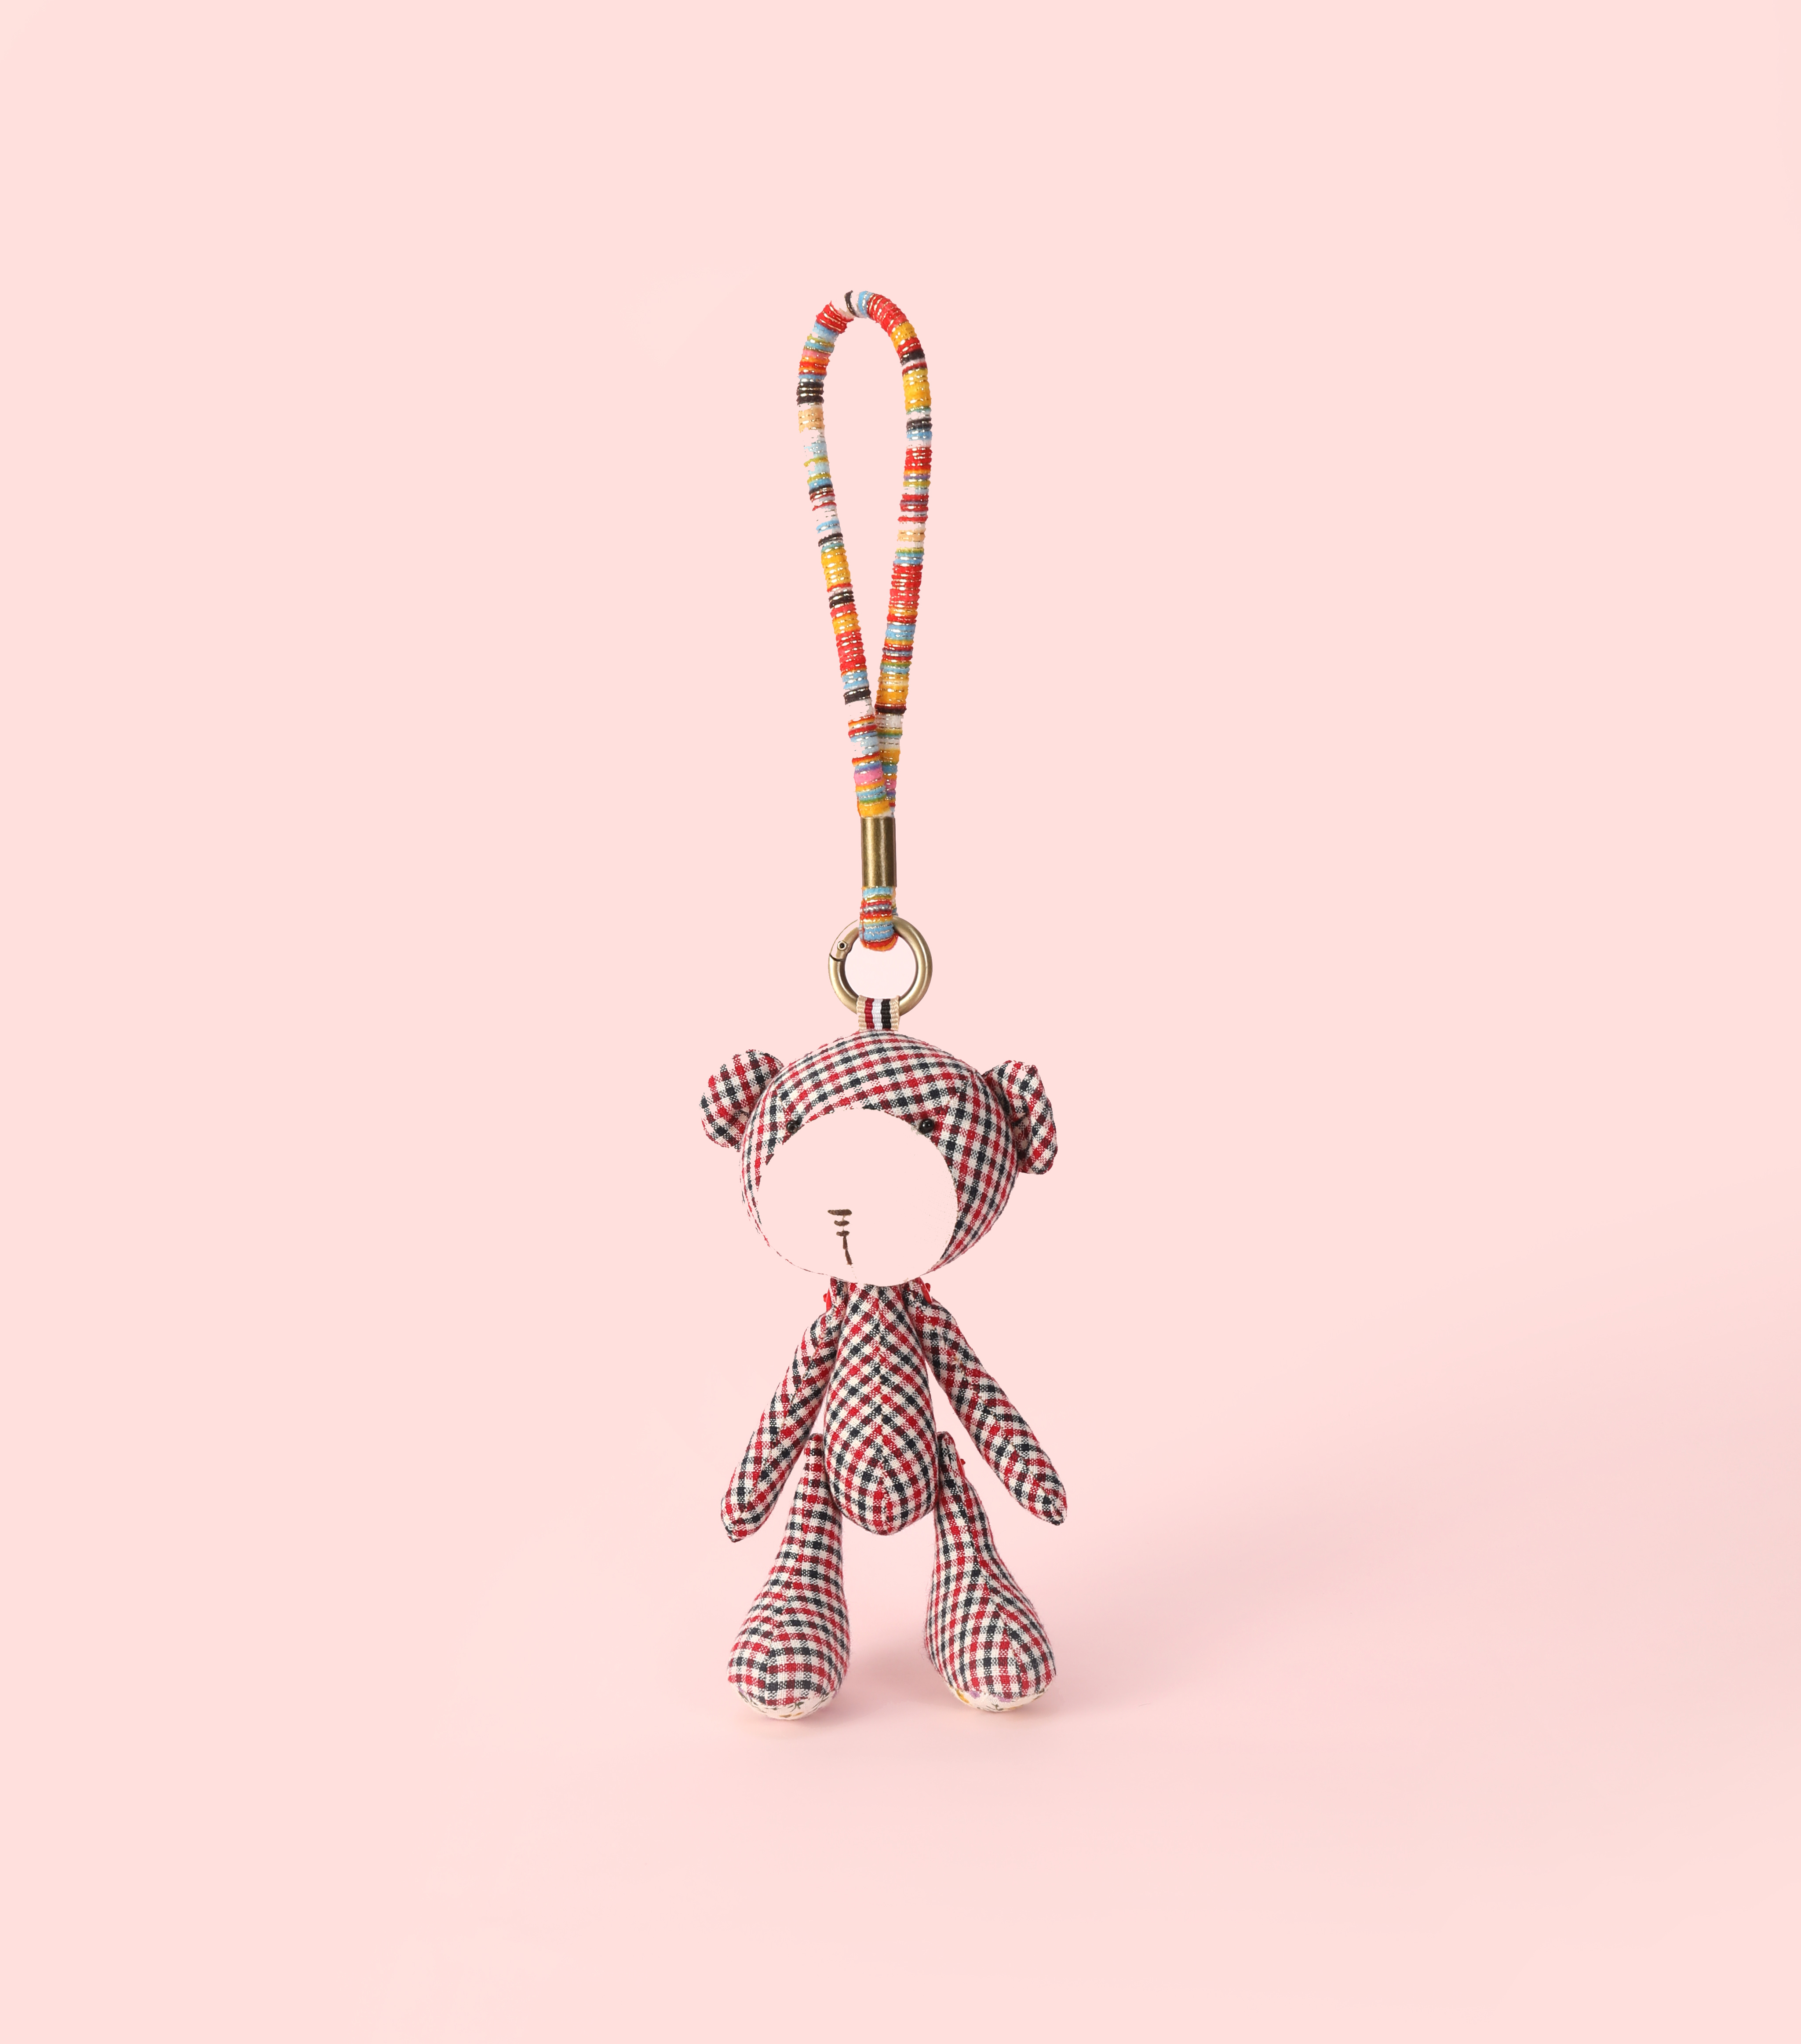 布艺娃娃布艺钥匙扣最新小熊款高端精品玩具